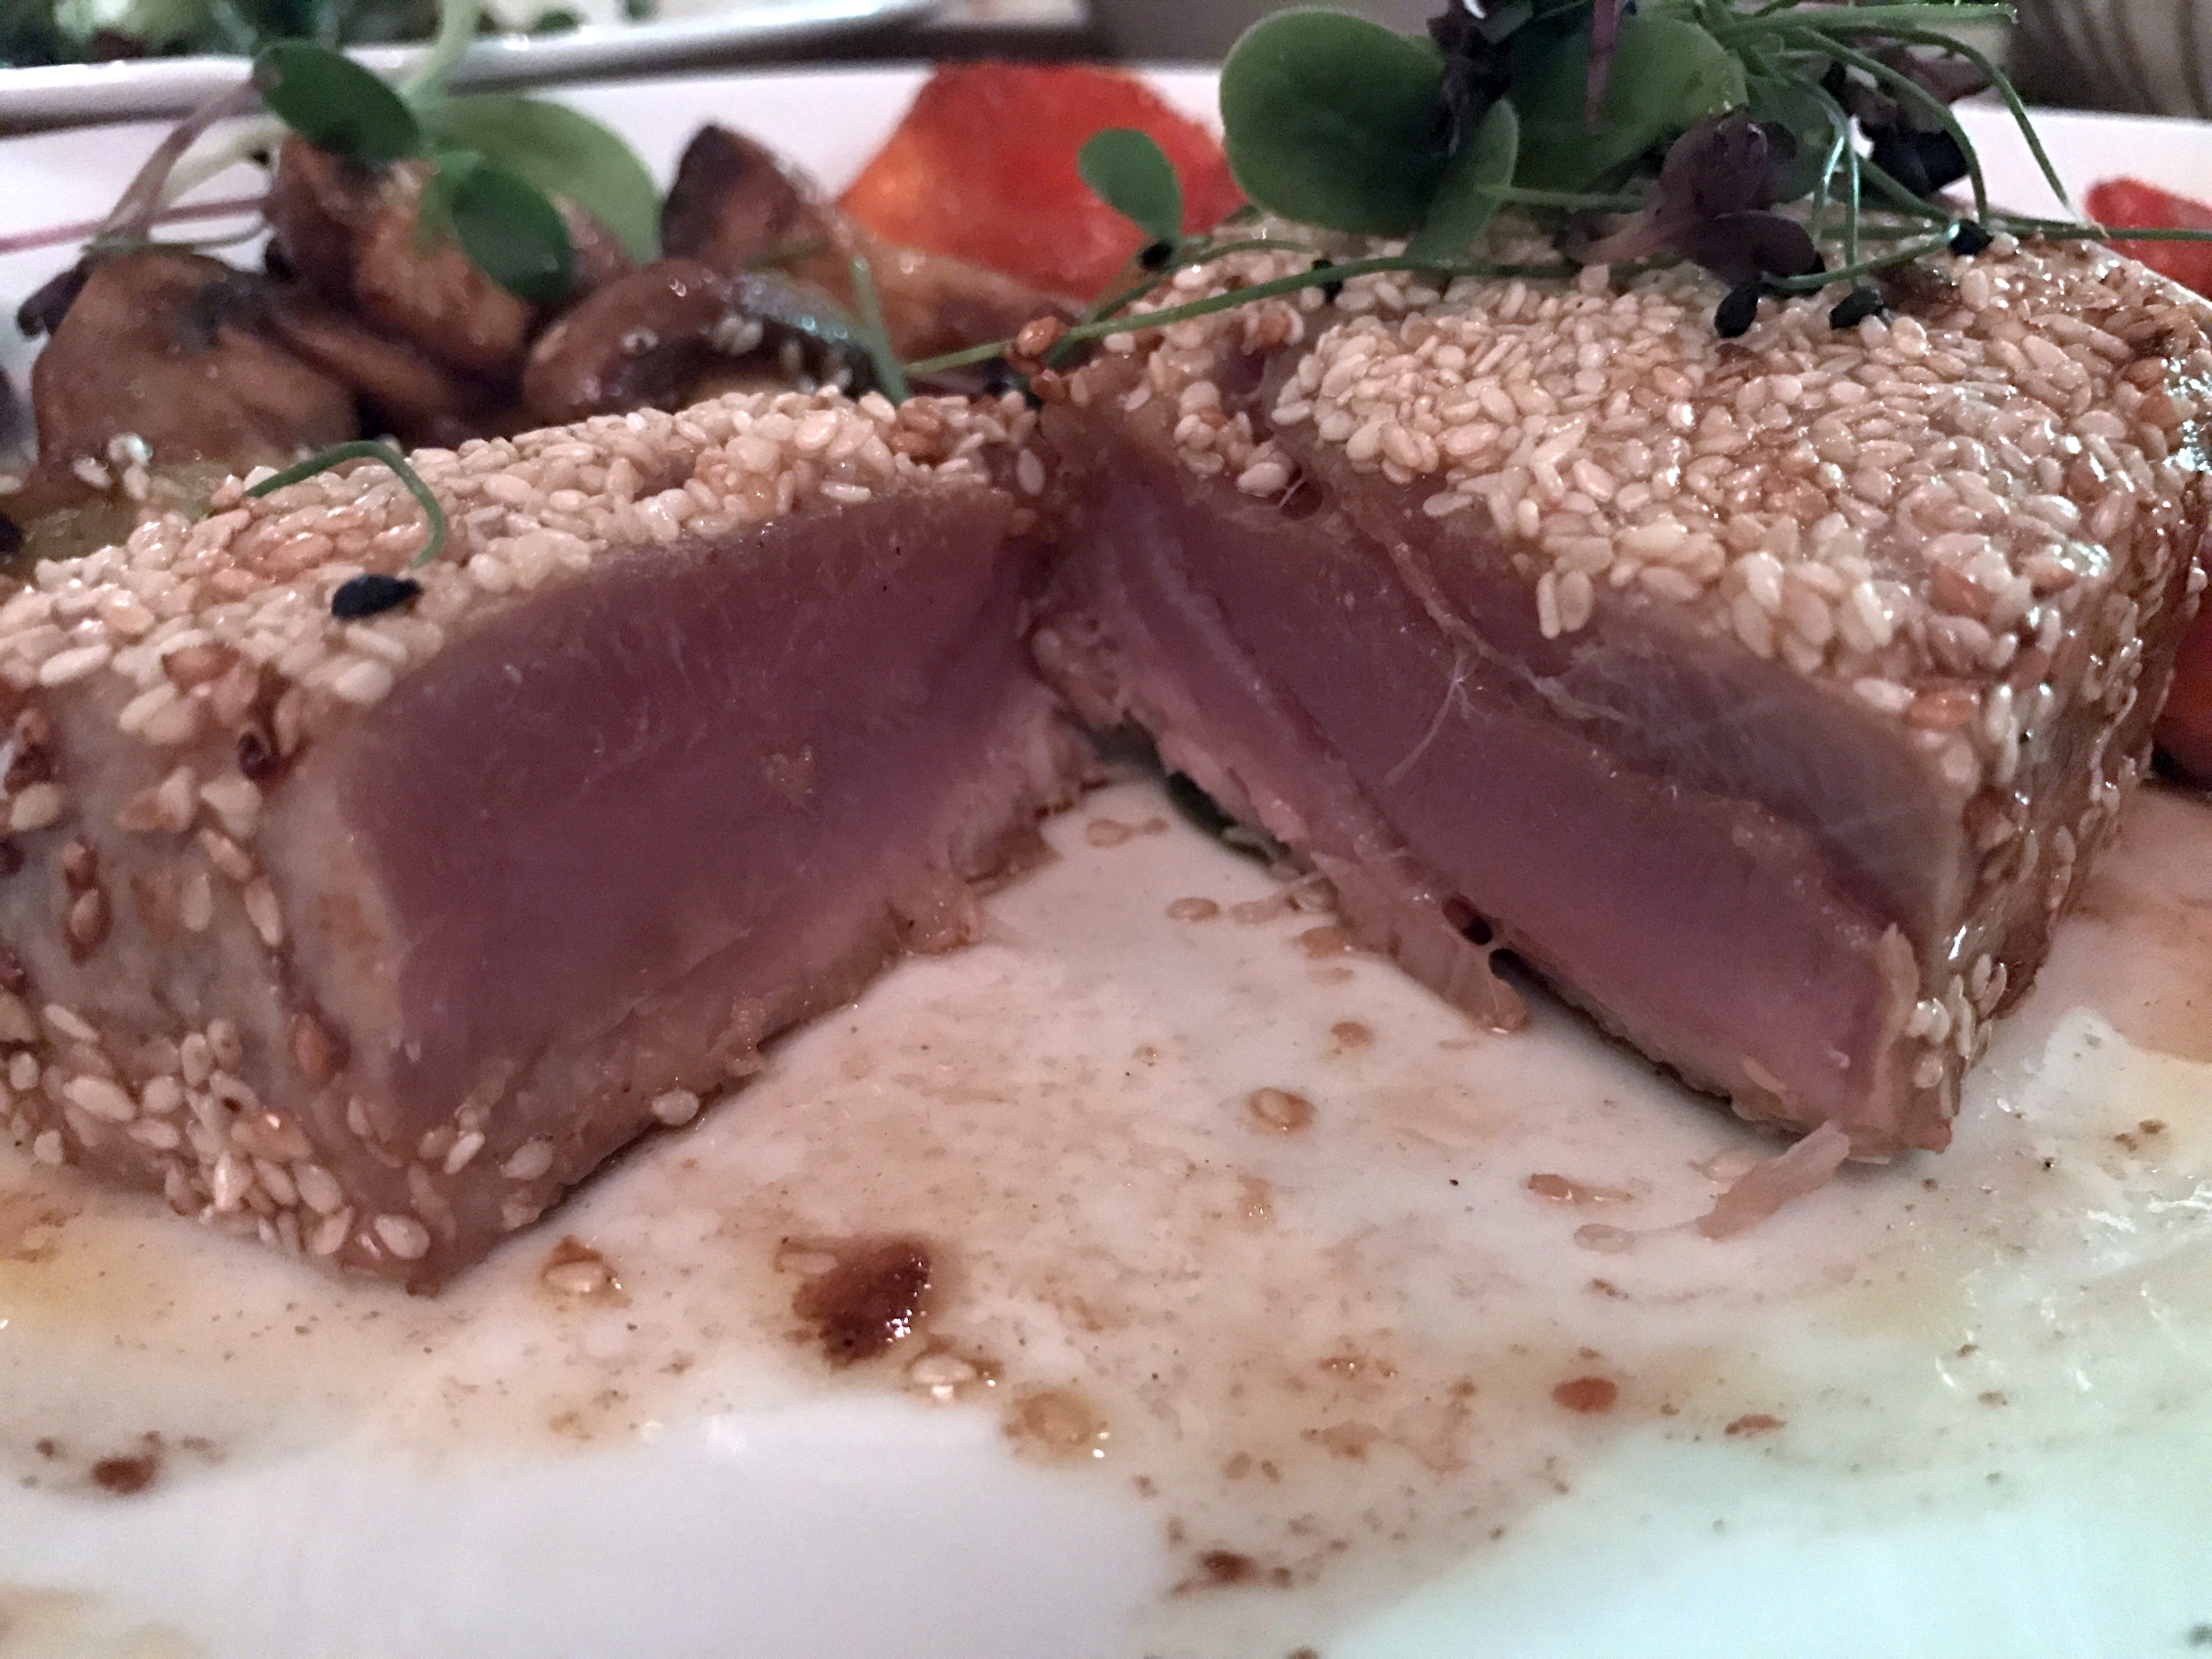 Thunfisch-Steak - perfekt gebraten und super zart. Ein Traum!